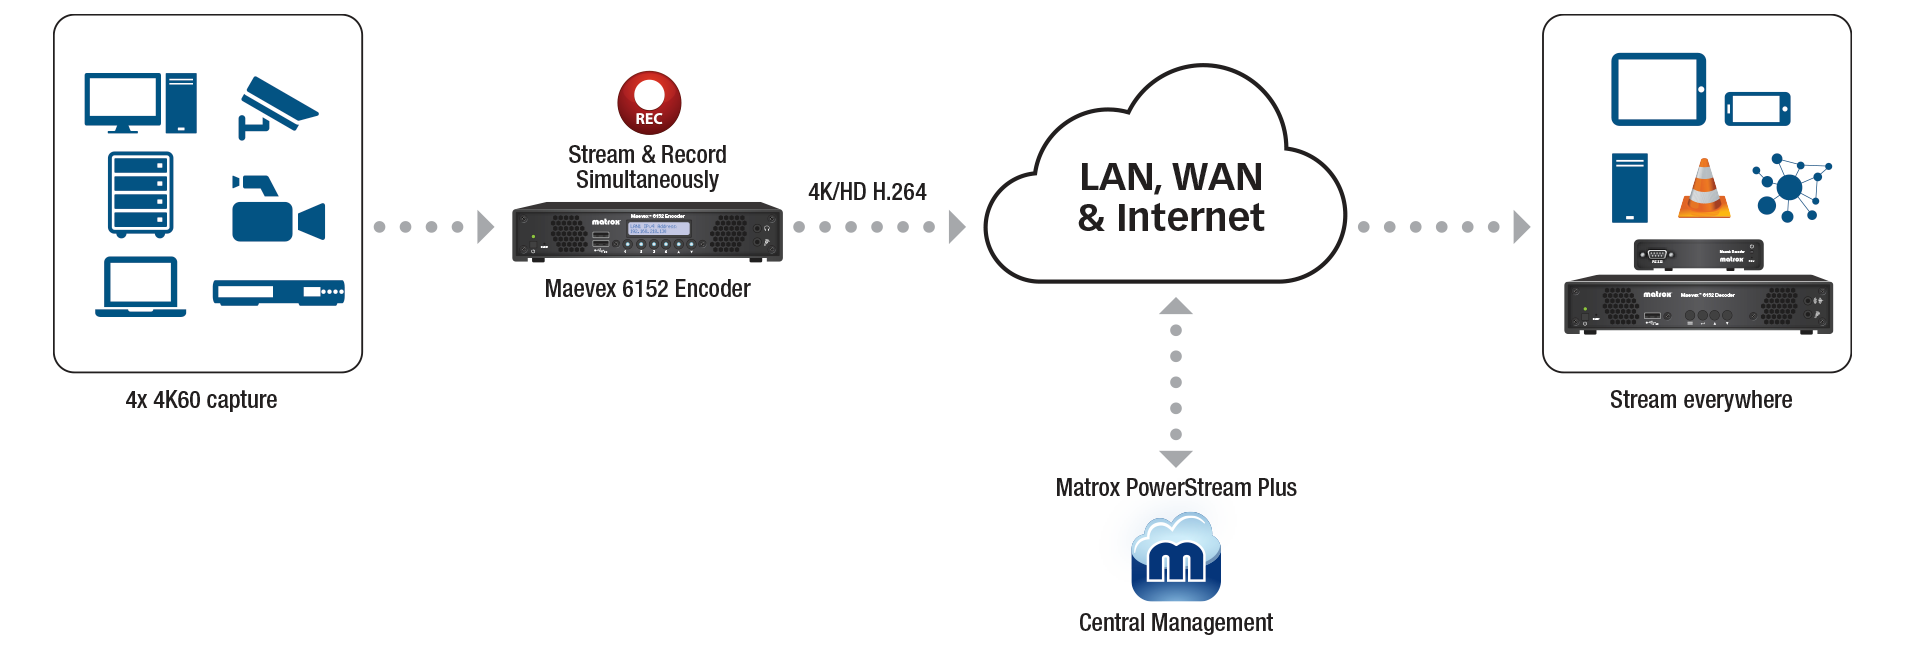 Workflow Diagram Lan Wan Internet Maevex 6152